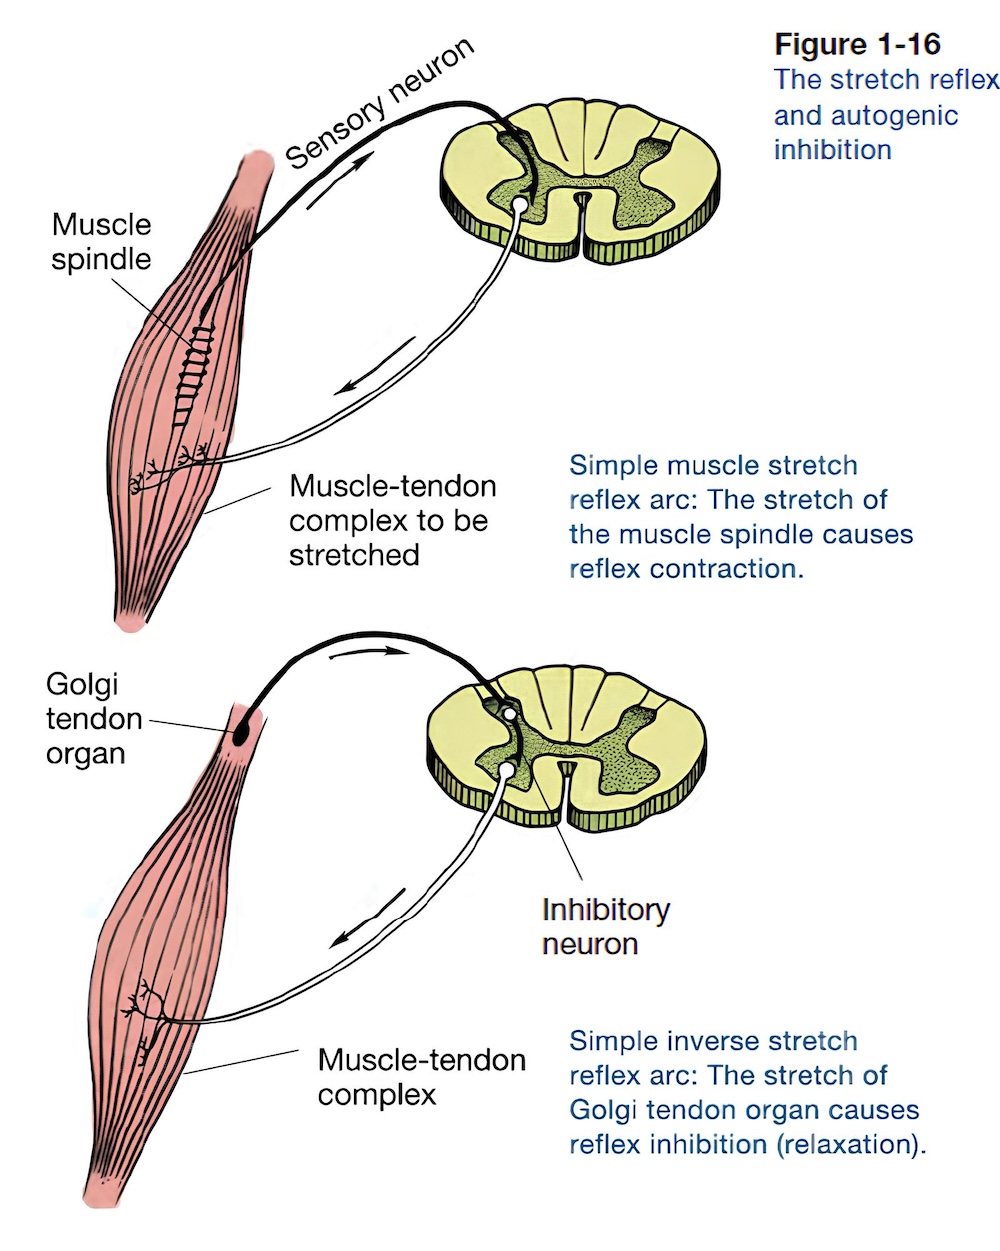 Golgi tendon organ